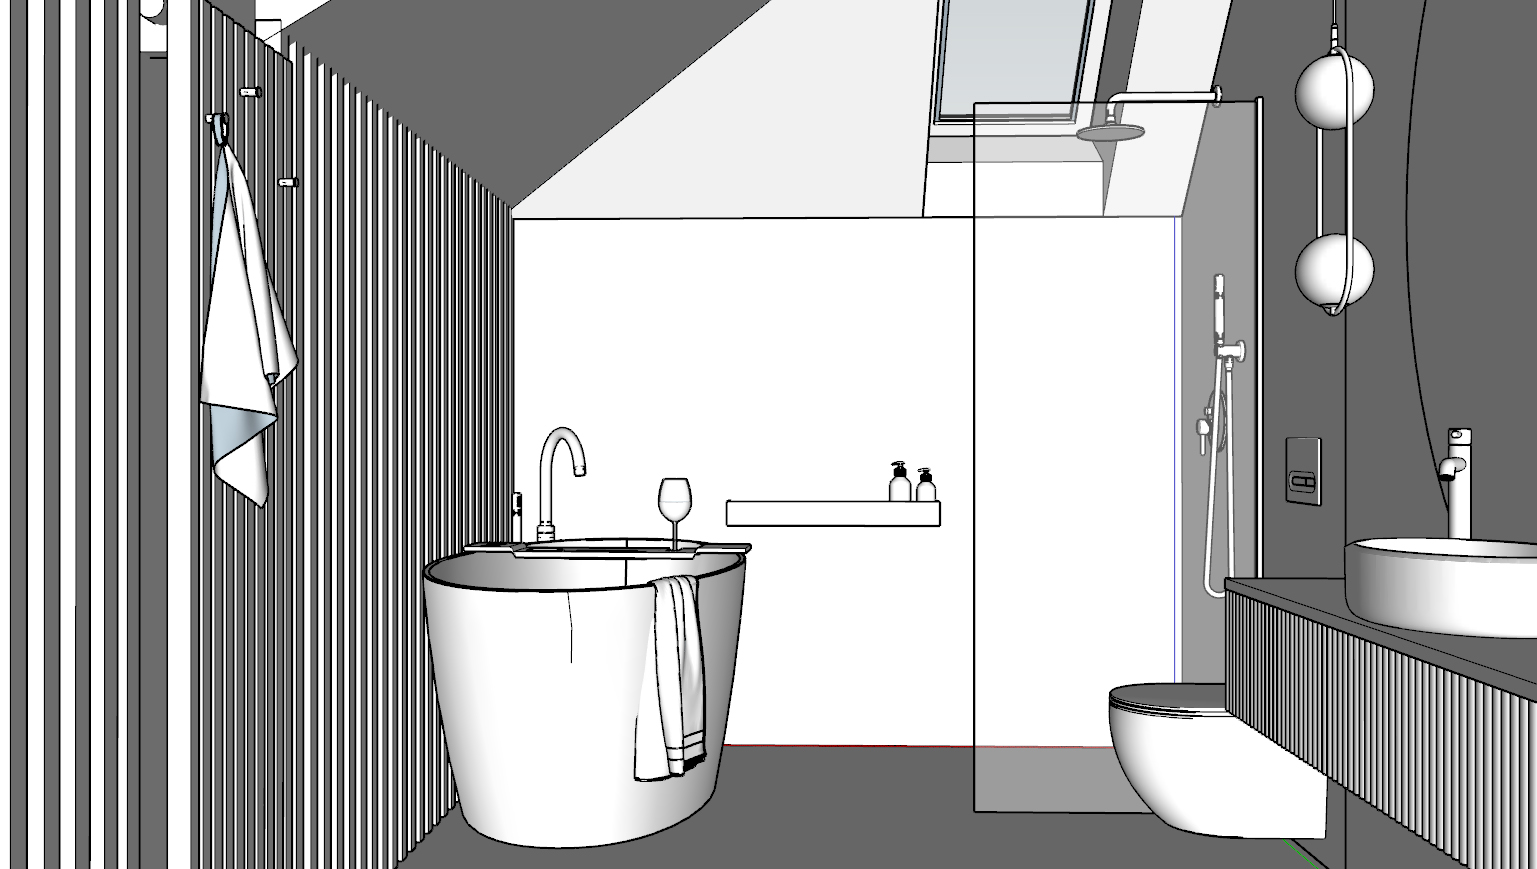 Wizualizacje kroku 2 – rysunki projektu łazienki w 3D bez kolorów. Wykonanie Wizualizacje Wnętrz Sztejkowski w programie SketchUp.